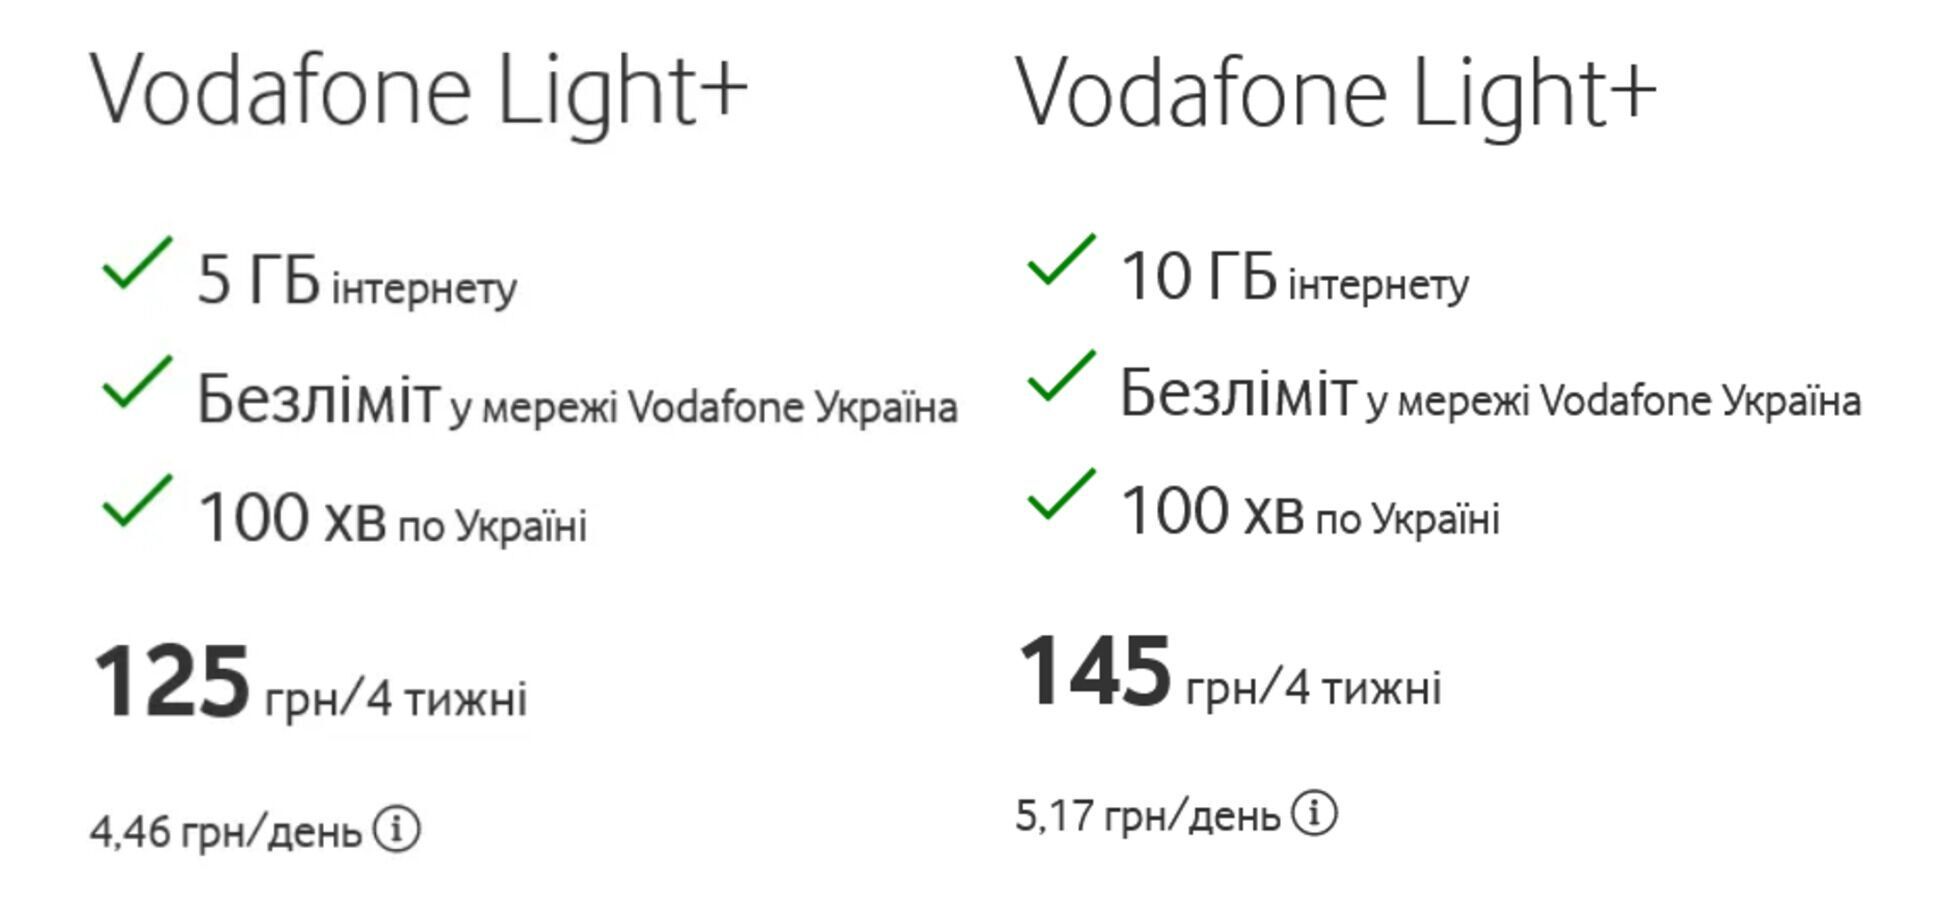 Вартість тарифу Light+ зросла із 125 грн до 145 грн